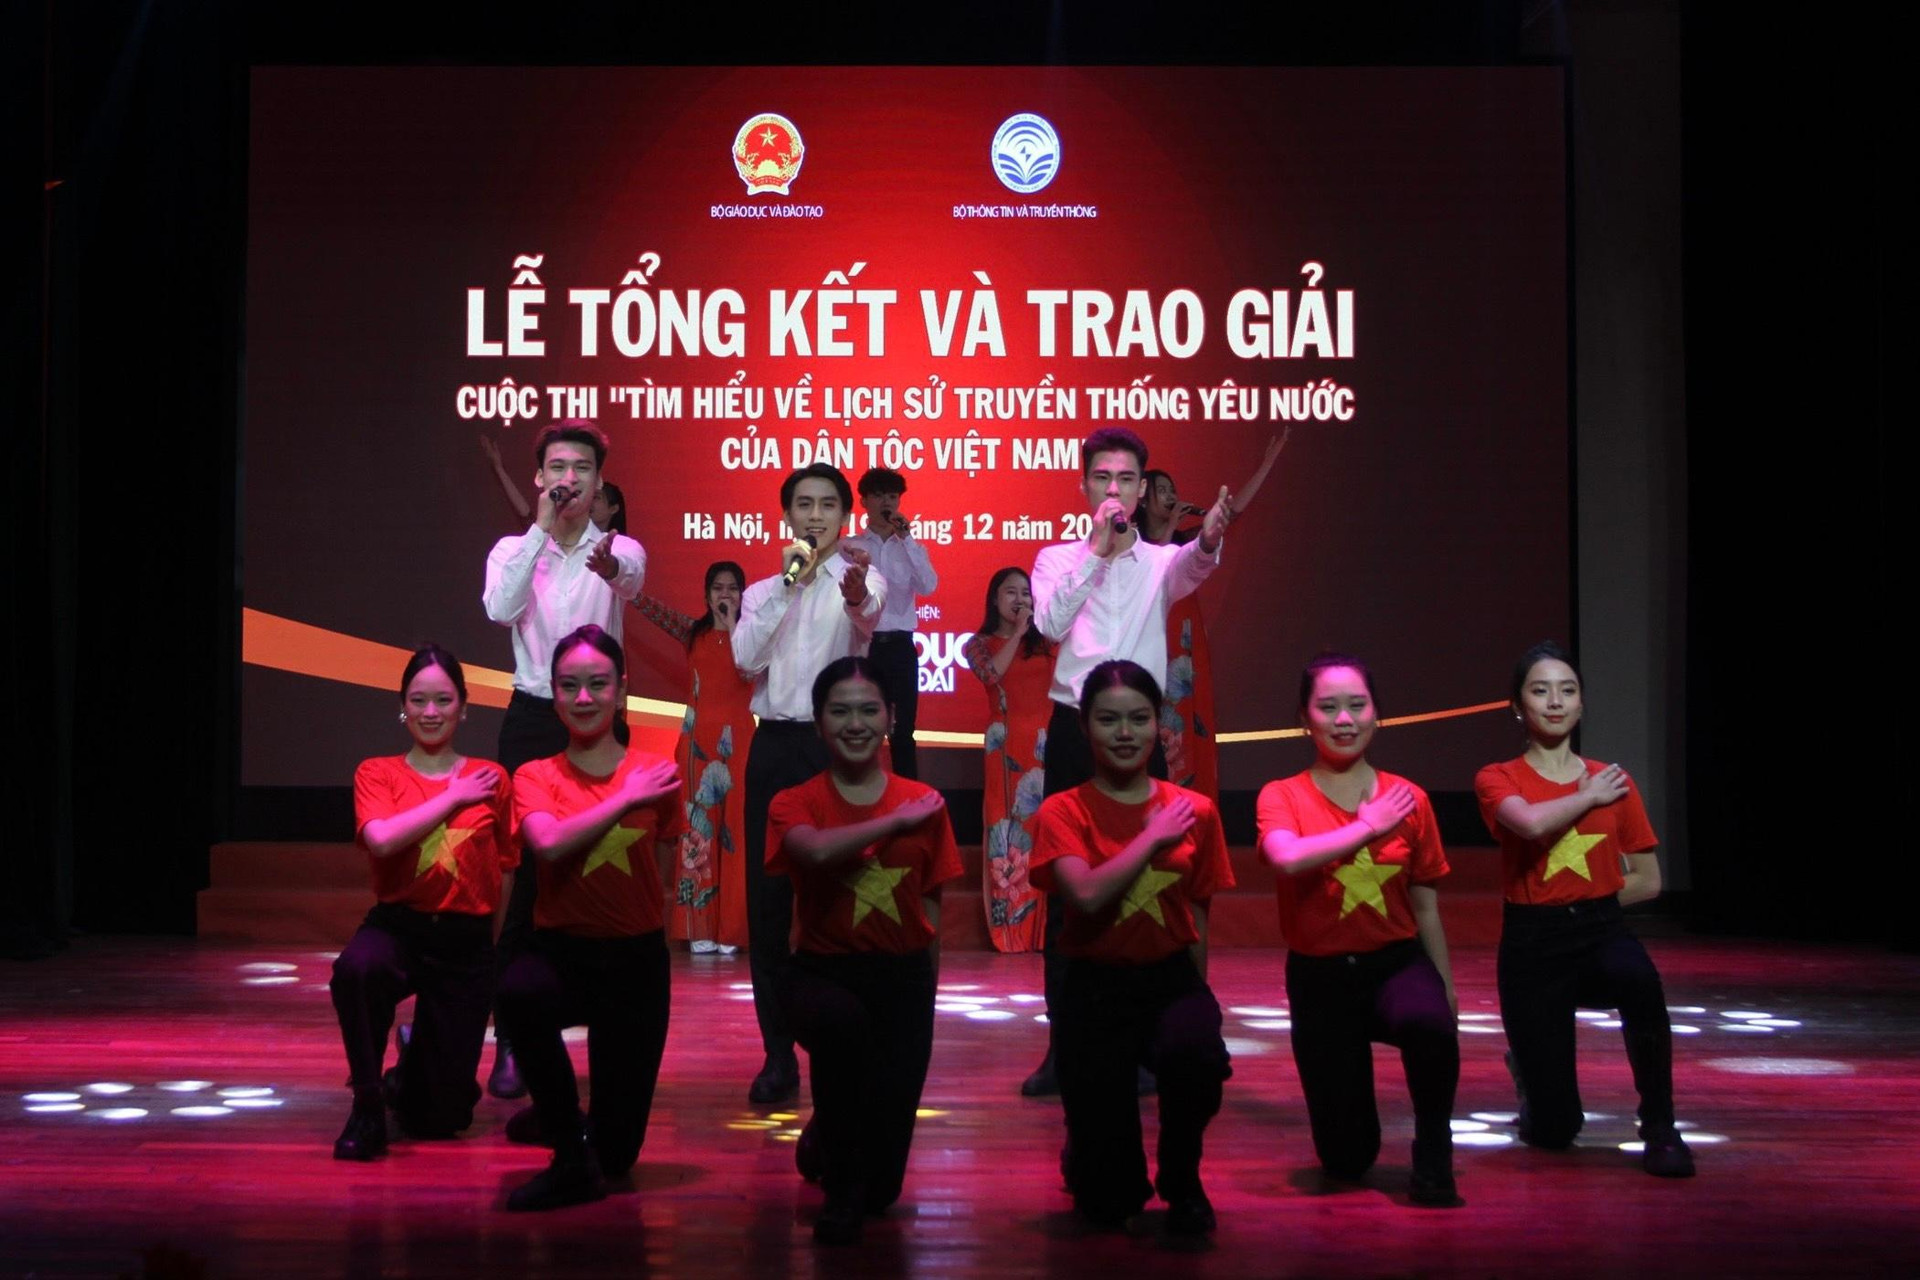 Trao giải cuộc thi Tìm hiểu lịch sử truyền thống yêu nước của dân tộc Việt Nam ảnh 1